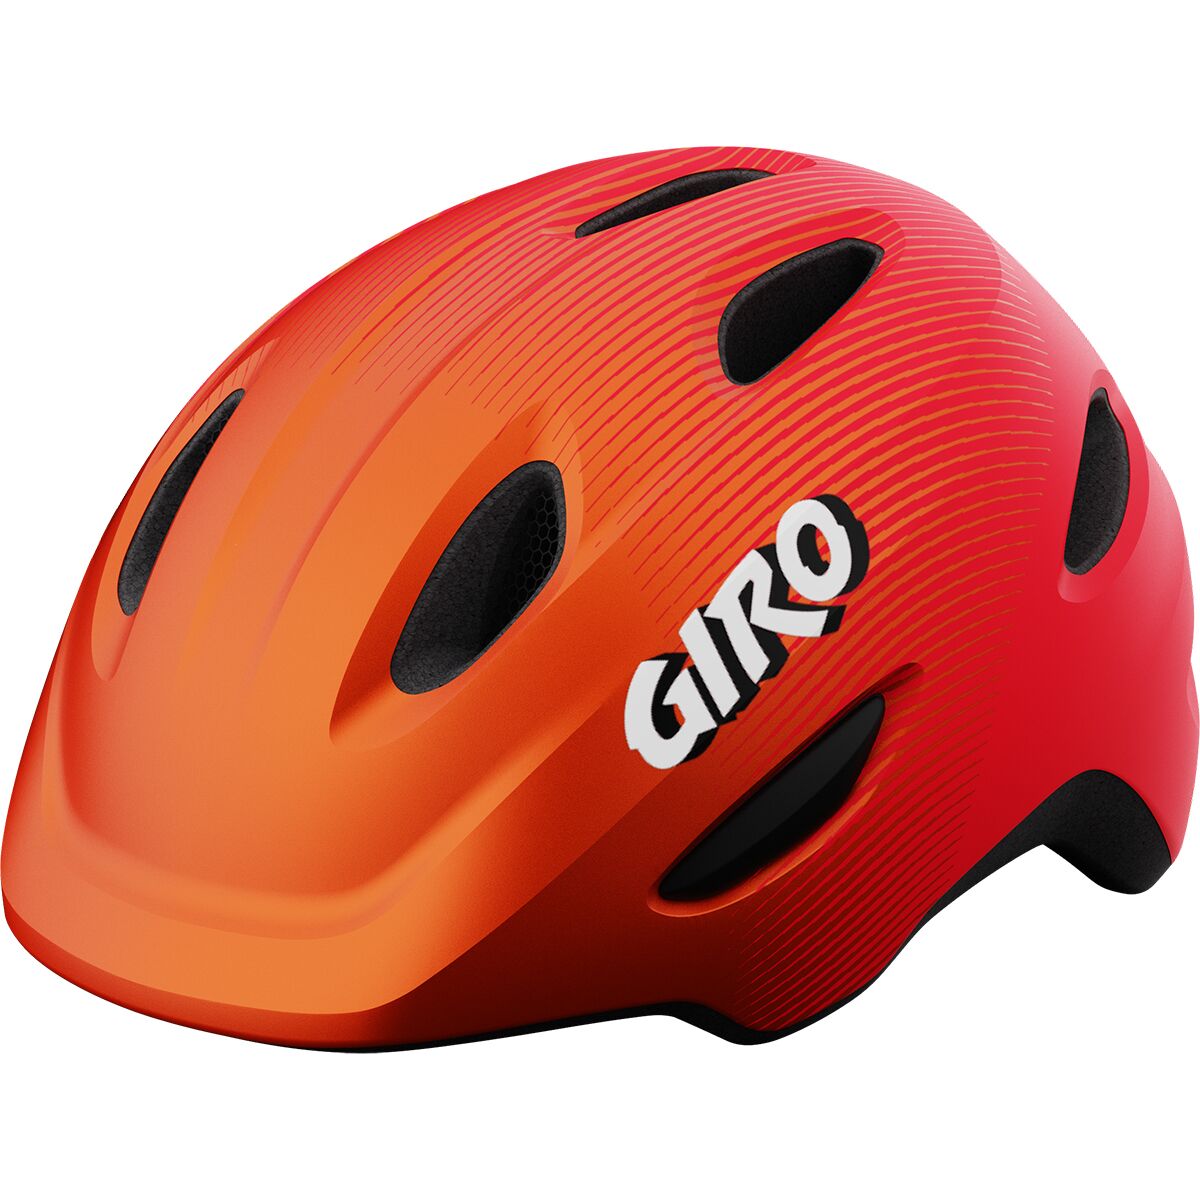 Giro Scamp Helmet - Kids'